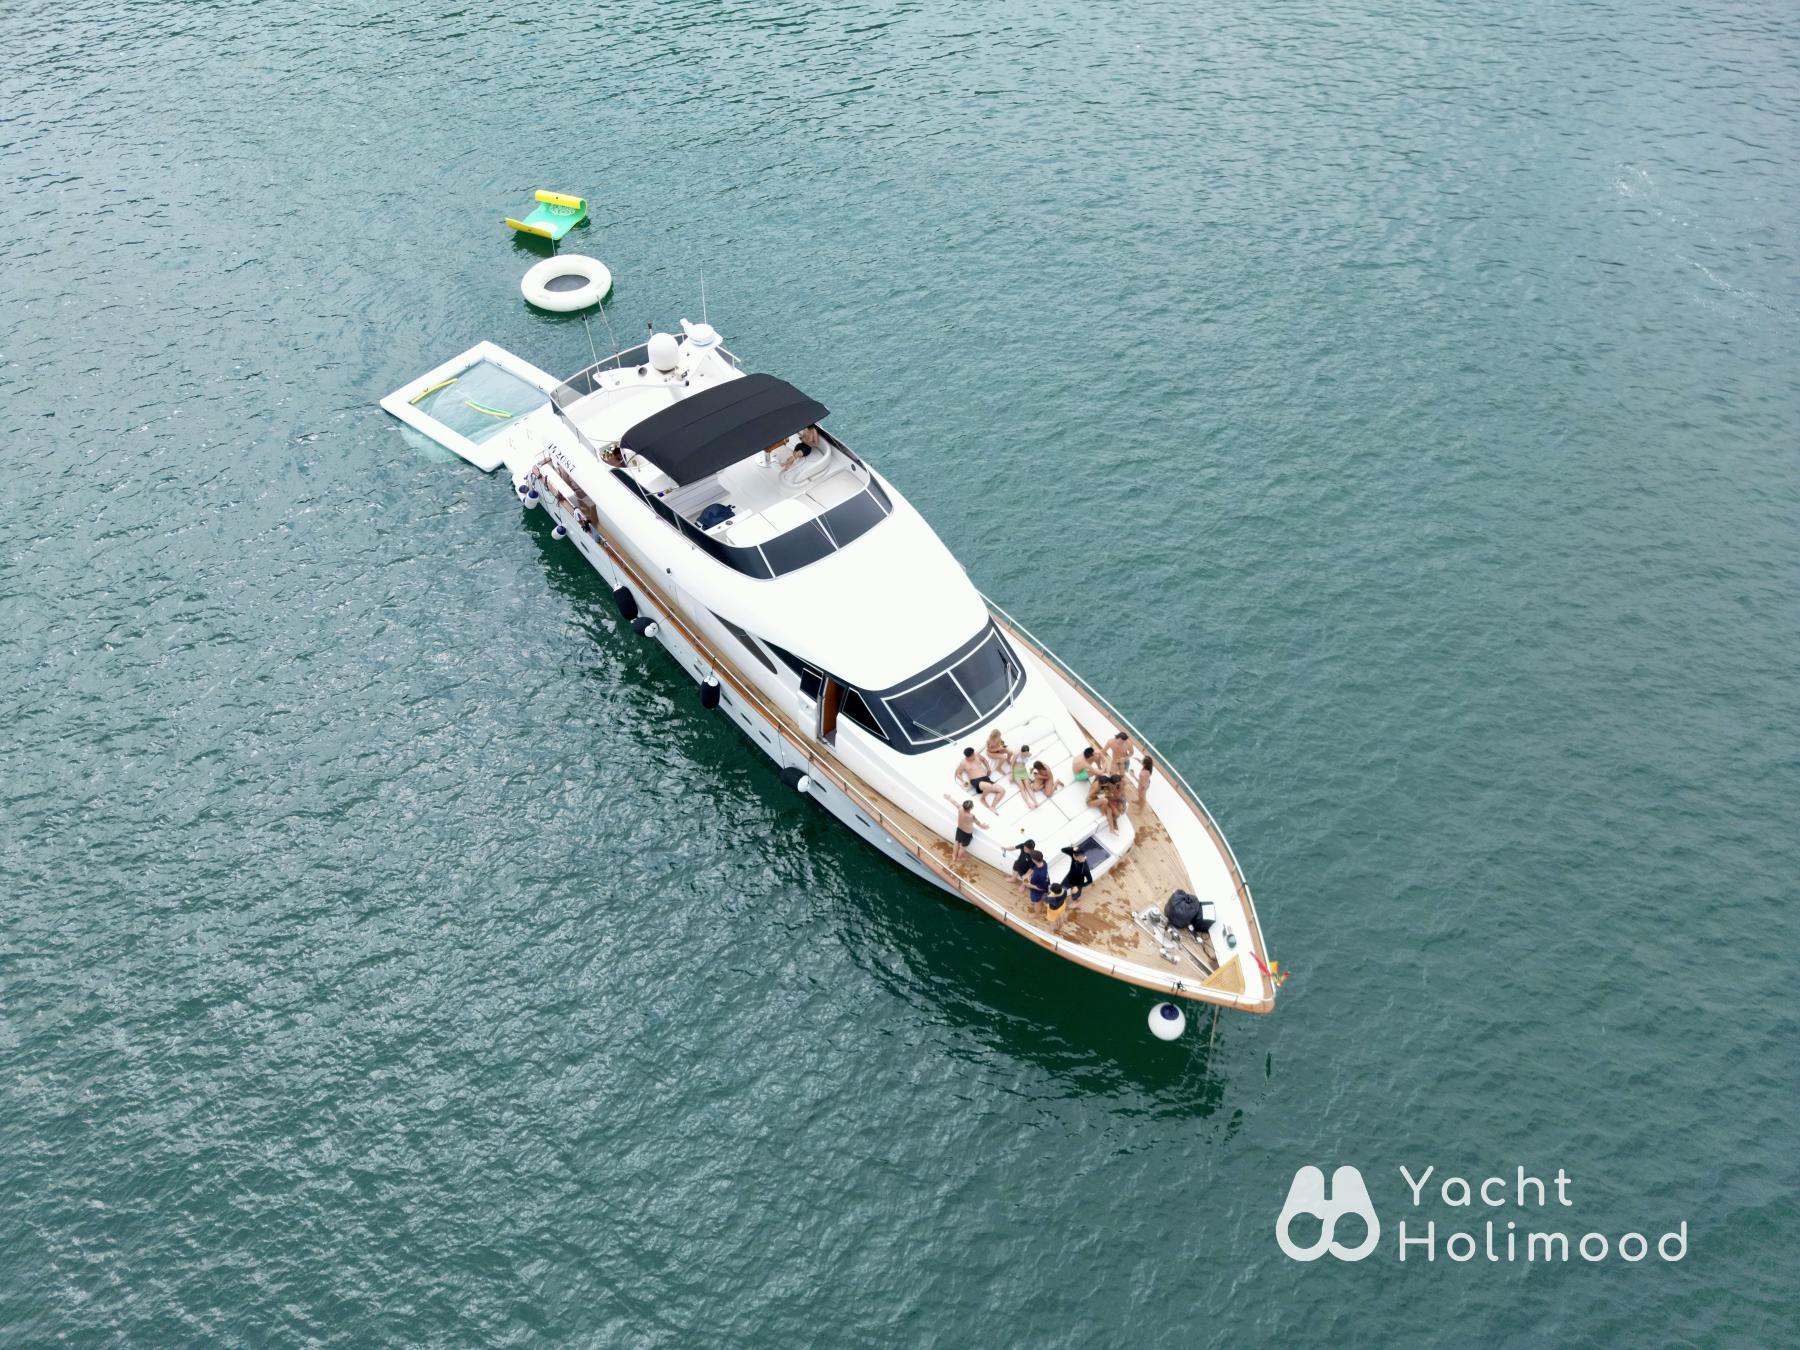 SL05 豪華西式遊艇全包王牌套餐 (送水上玩具 + 精美到會 + WAKESURF抽獎 2